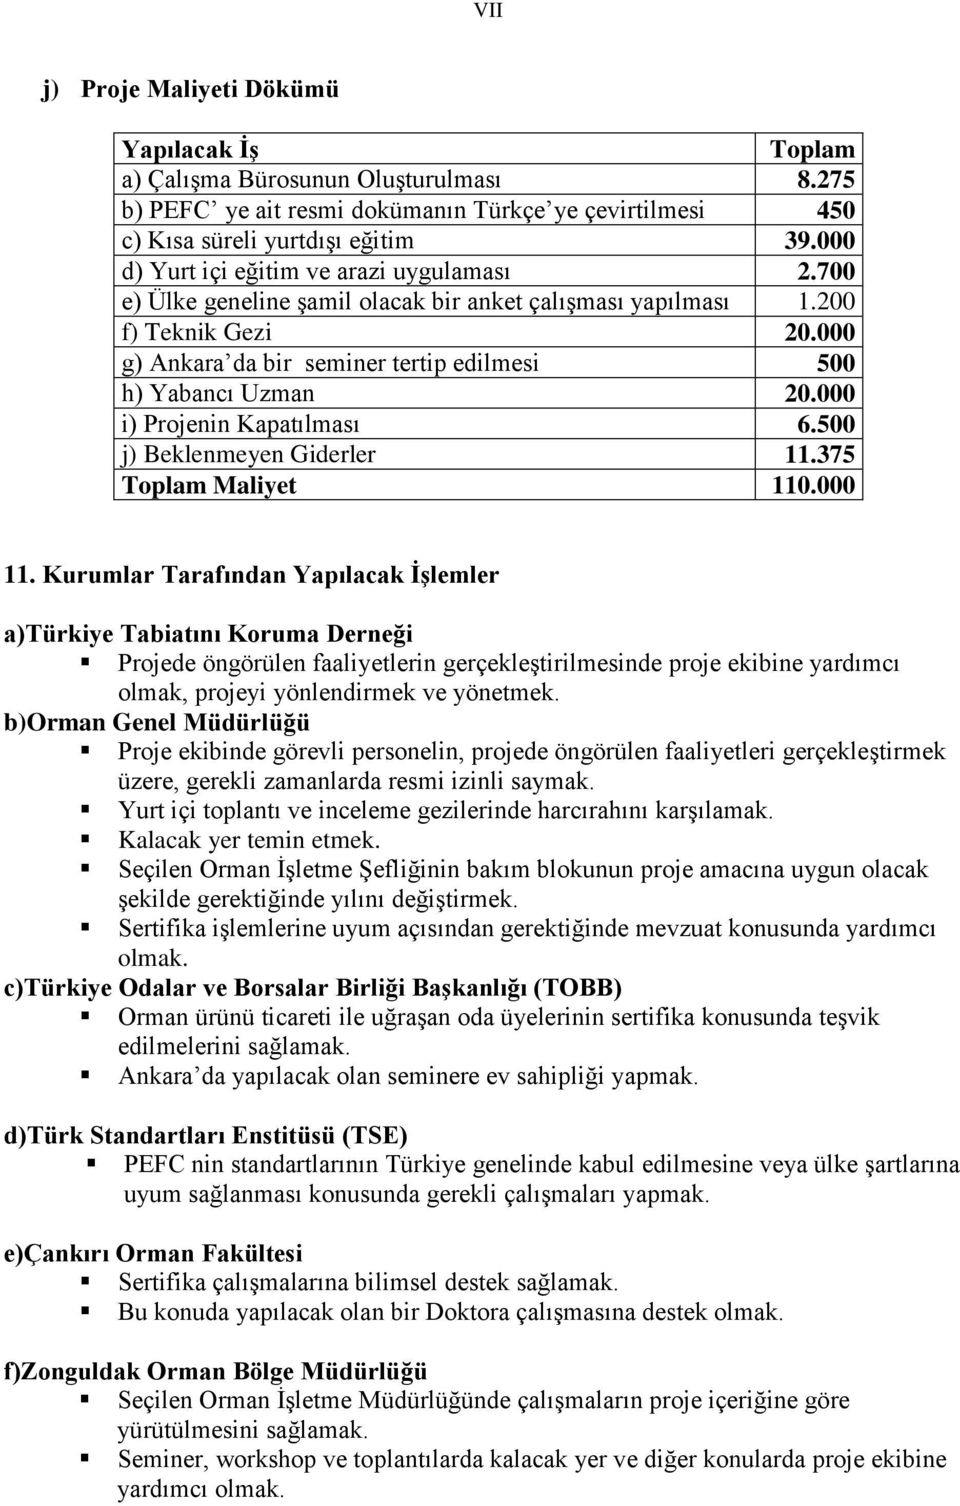 000 g) Ankara da bir seminer tertip edilmesi 500 h) Yabancı Uzman 20.000 i) Projenin Kapatılması 6.500 j) Beklenmeyen Giderler 11.375 Toplam Maliyet 110.000 11.